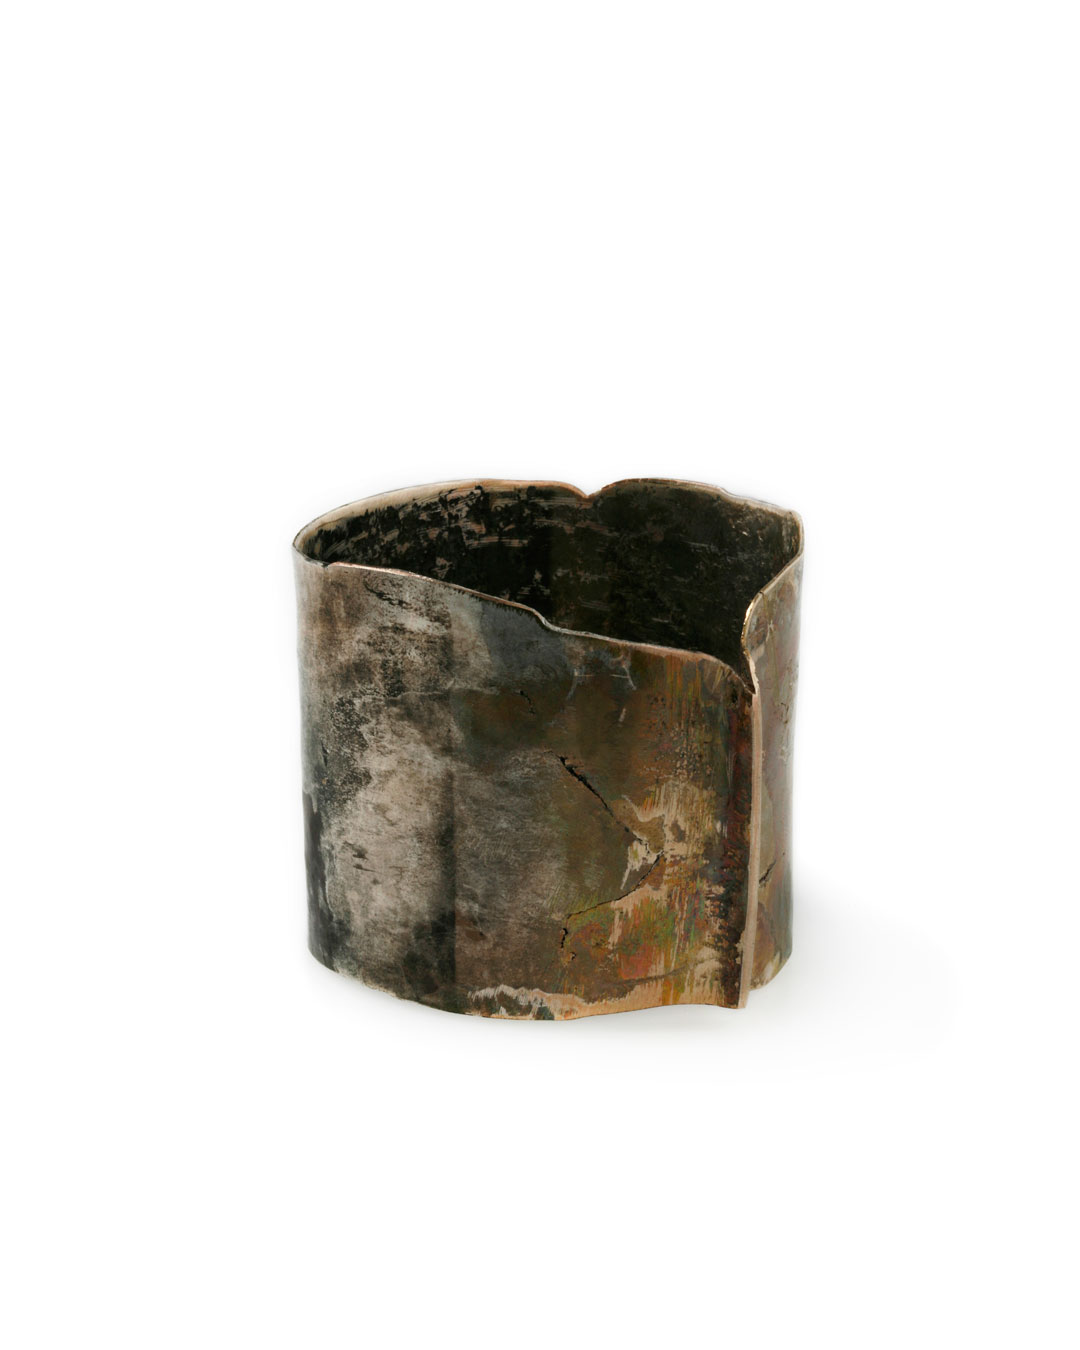 Rudolf Kocéa, V - Wald (Wood), 2011, bracelet; silver, copper, 67 x 78 x 84 mm, €1985